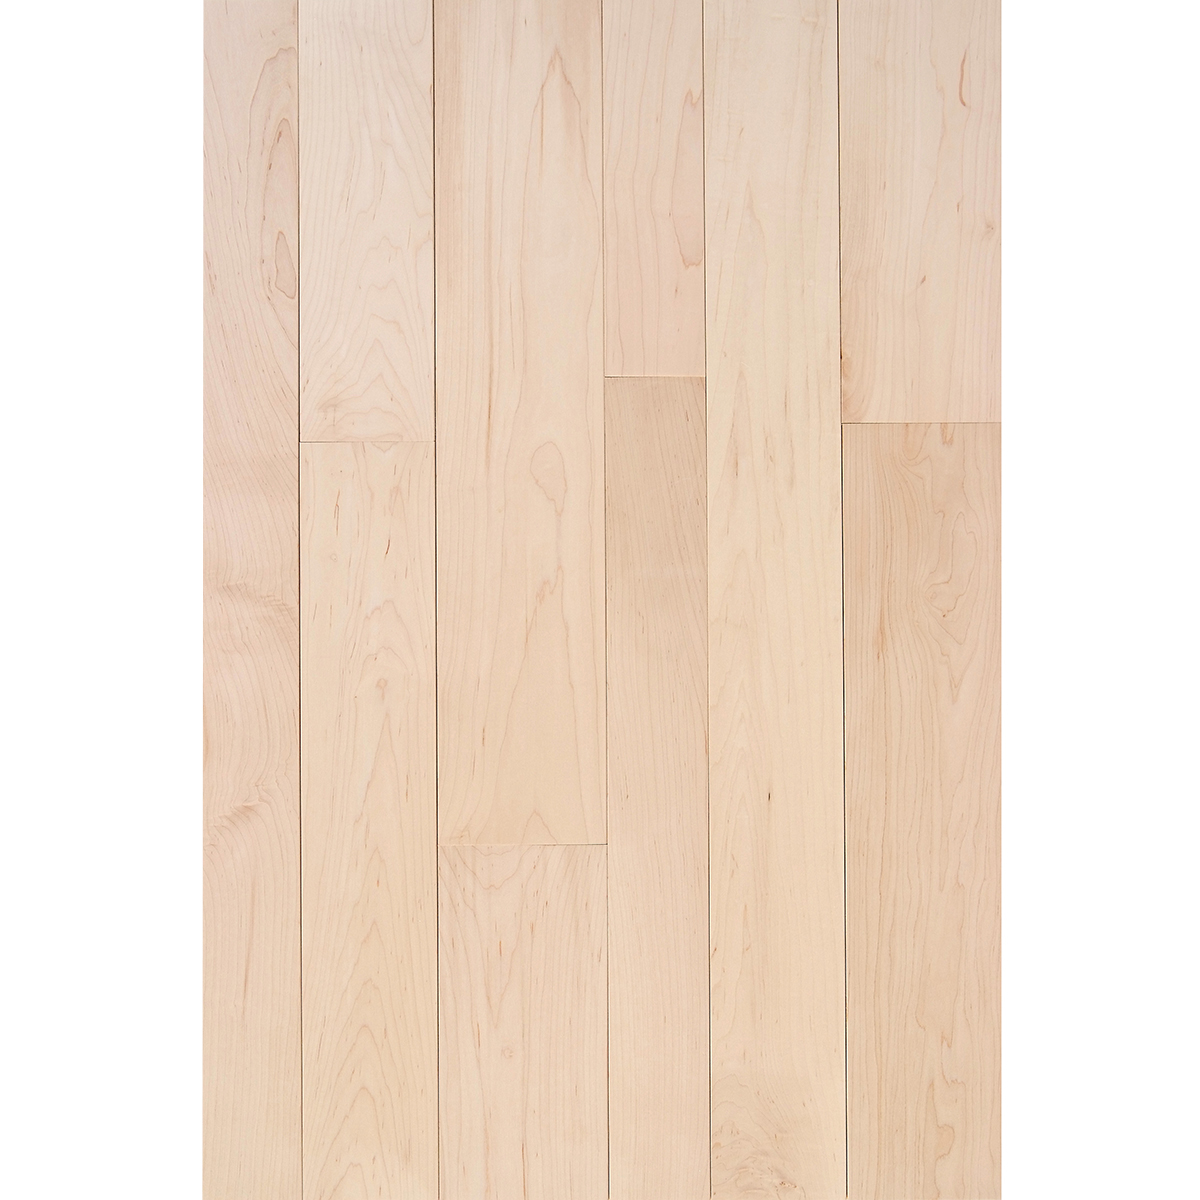 Hard Maple 3 4 X 5 Select, Unfinished Maple Hardwood Flooring